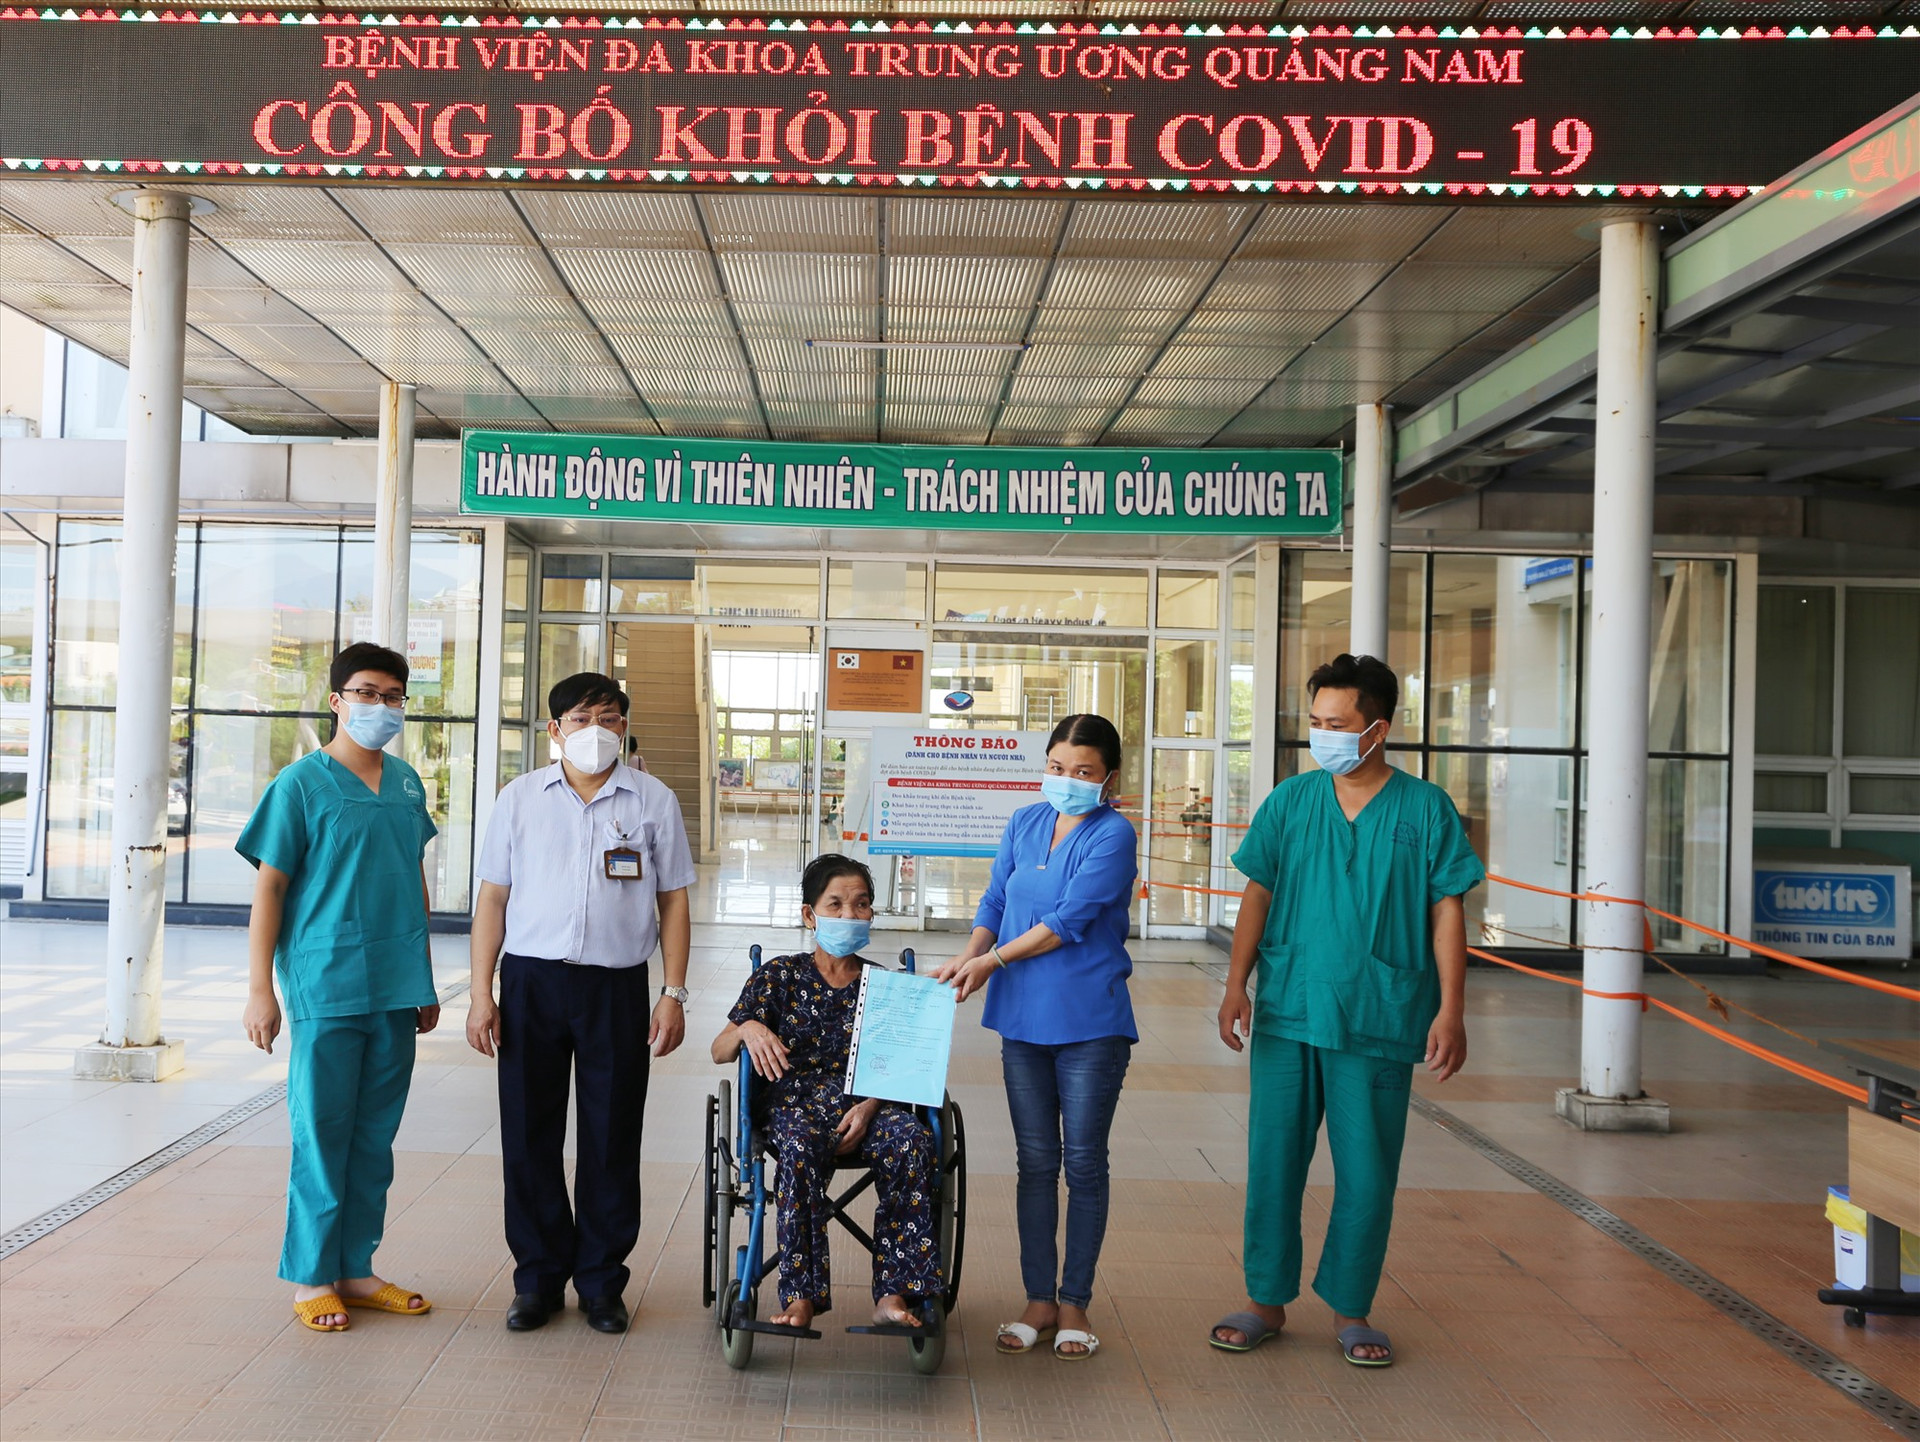 Công bố ca khỏi bệnh Covid-19 tại Bệnh viện Đa khoa Trung ương Quảng Nam. Ảnh P.T